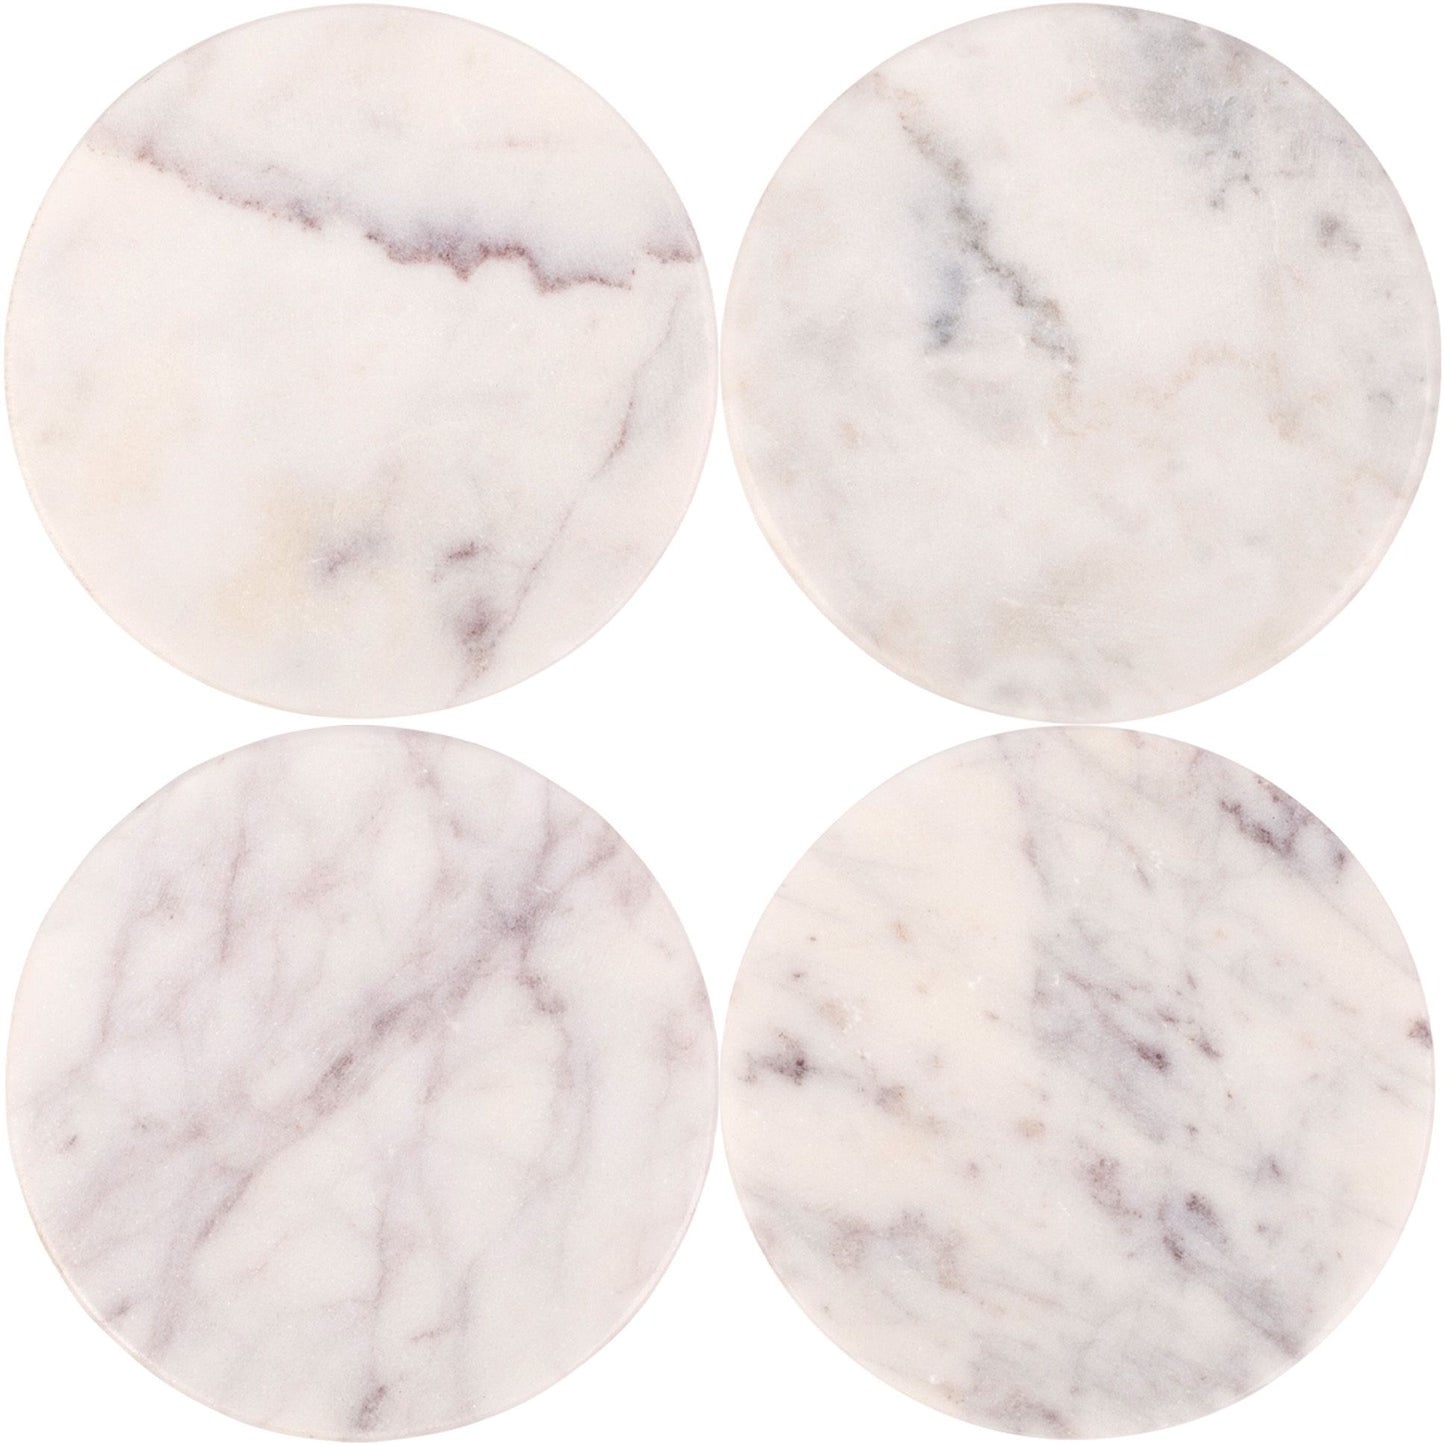 Coasters redondos de marmol blanco